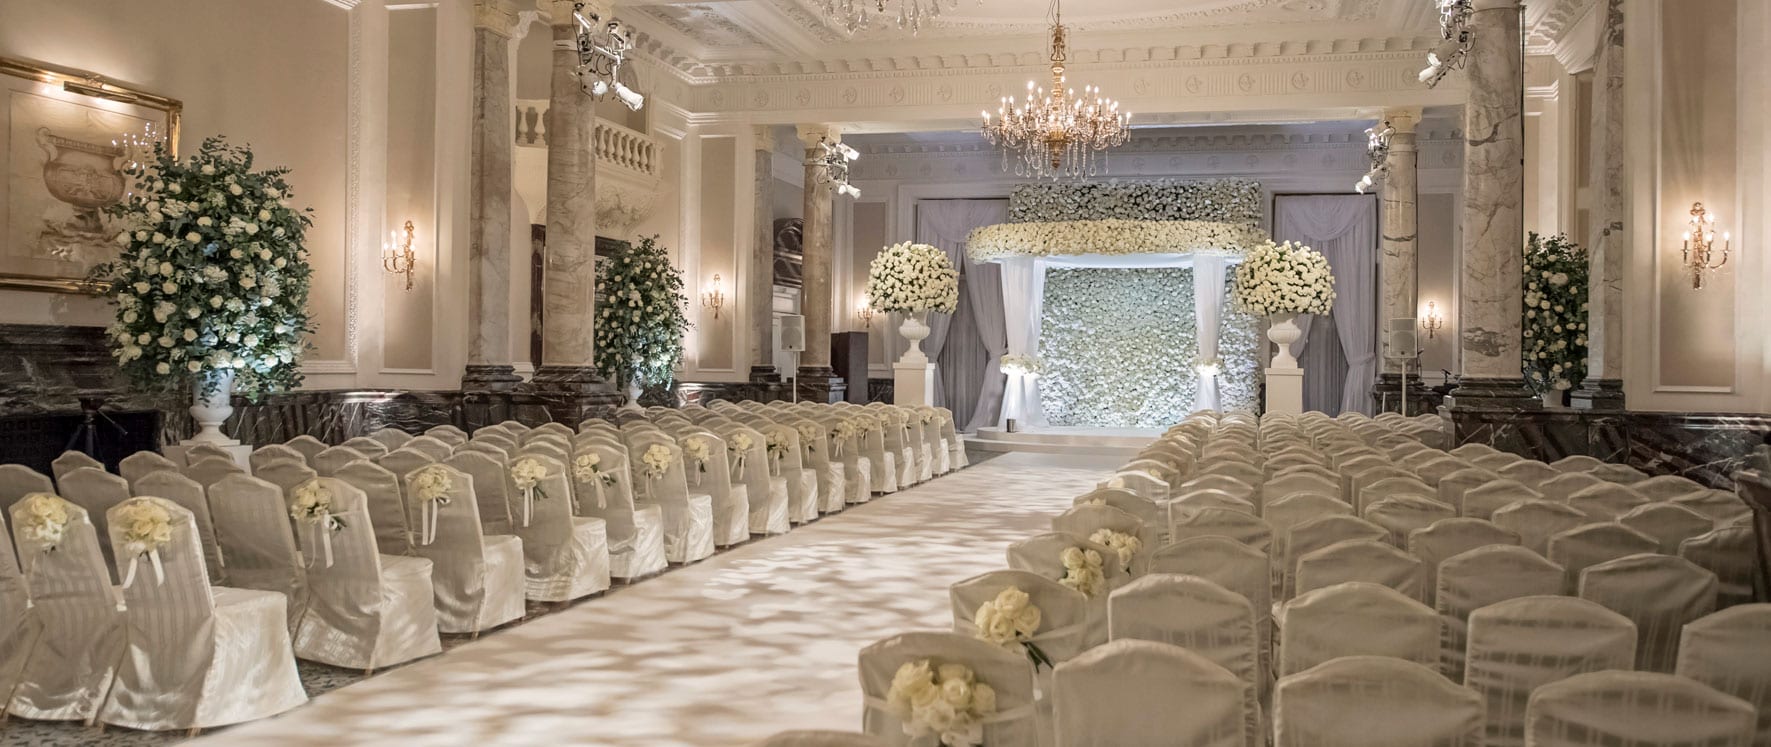 Luxury hotel wedding venues London, wedding packages